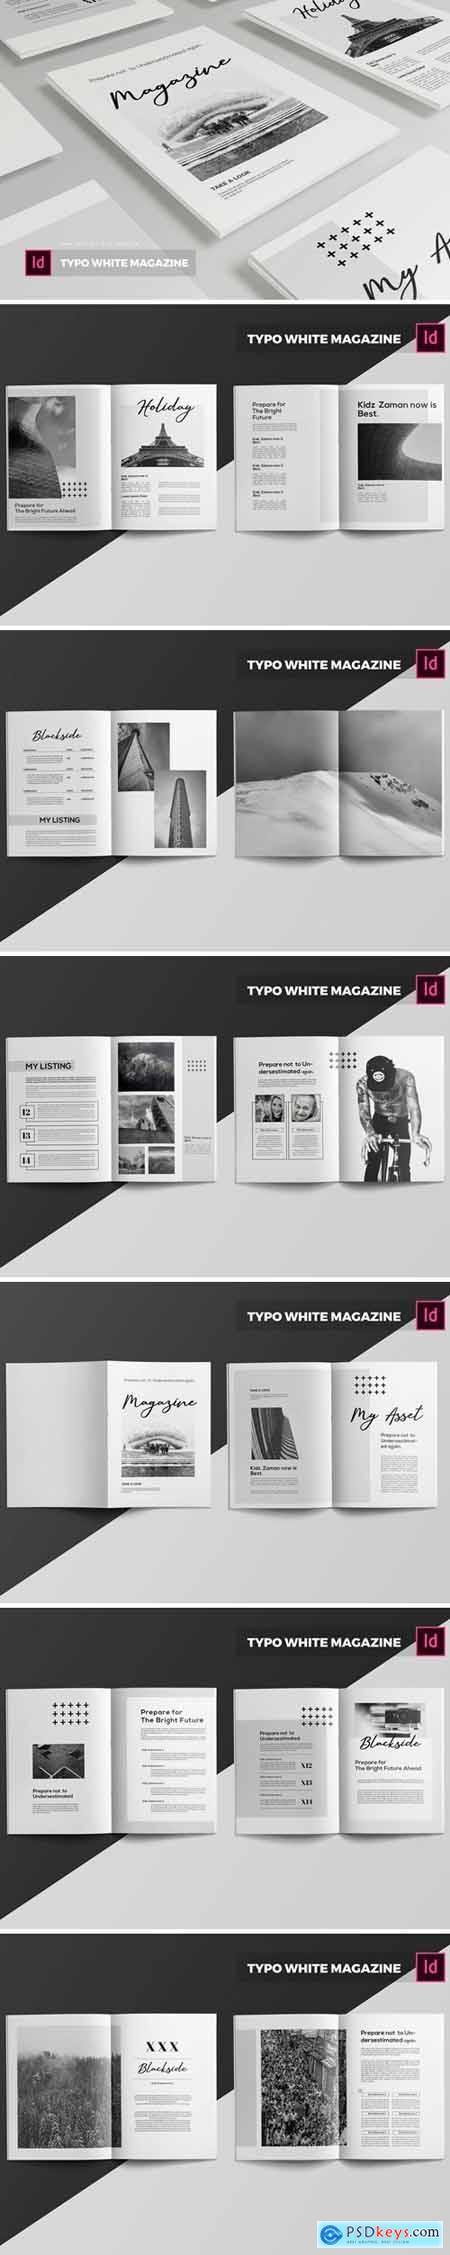 Typo White Magazine Template